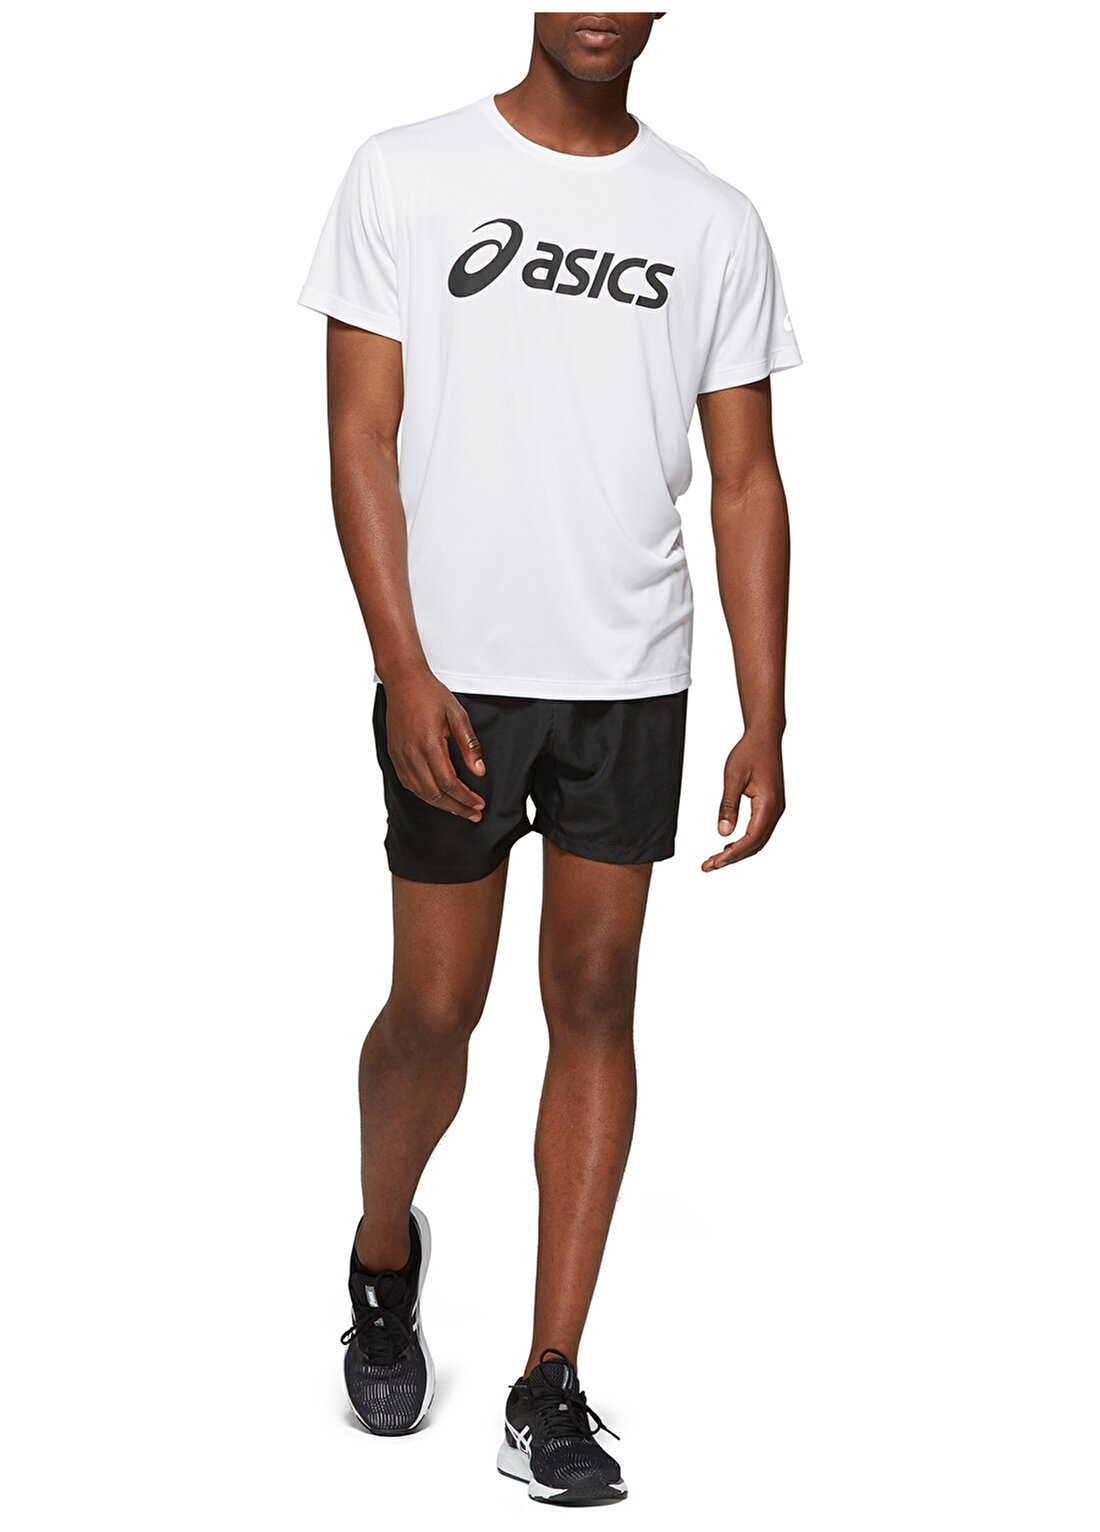 Asics 2011A474-100 Silver Asics Top T-Shirt